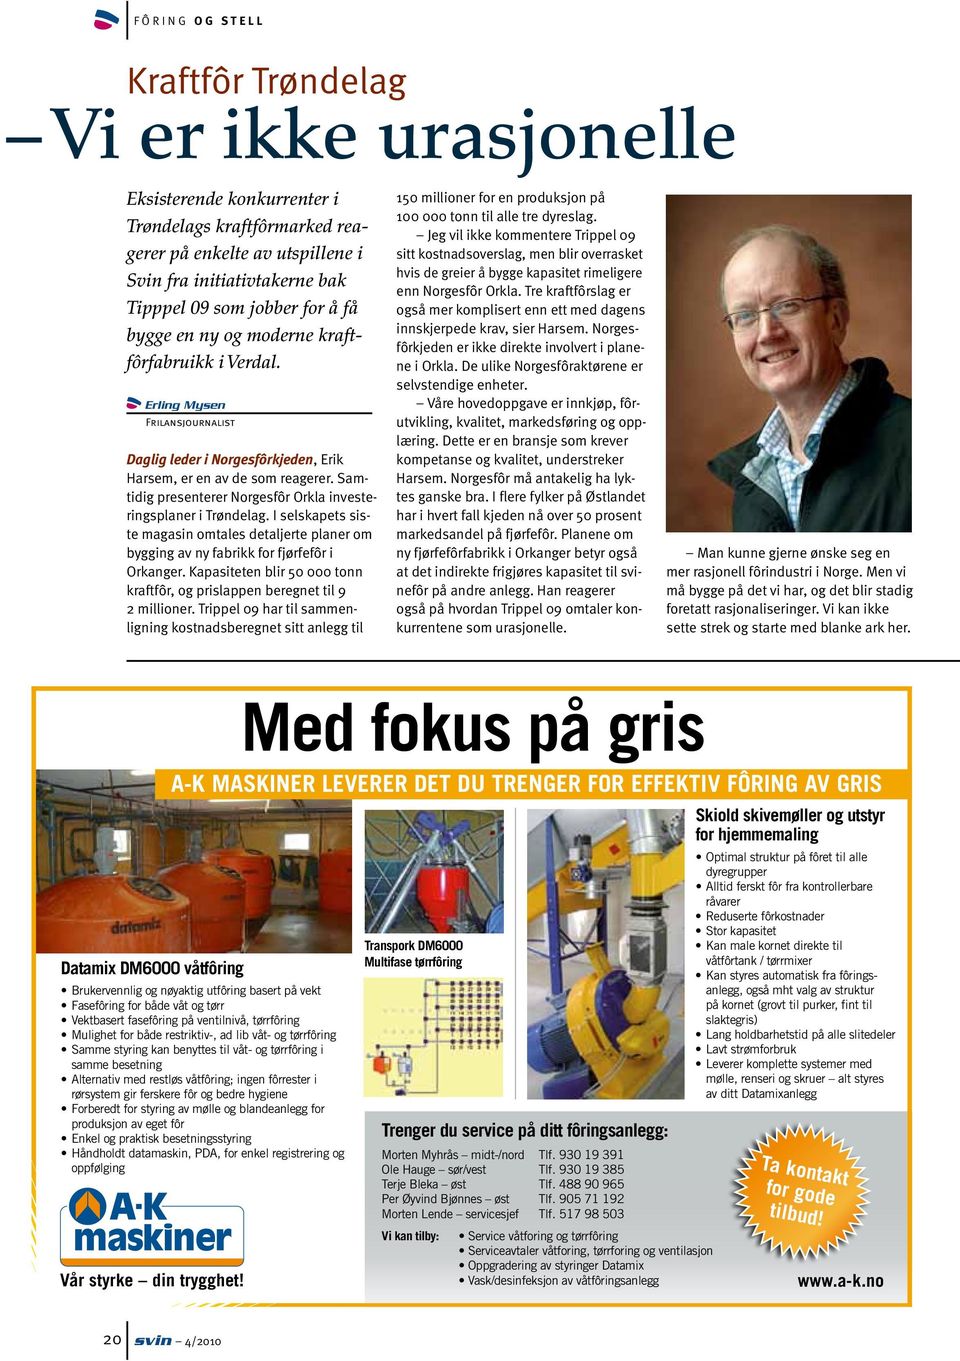 Samtidig presenterer Norgesfôr Orkla investeringsplaner i Trøndelag. I selskapets siste magasin omtales detaljerte planer om bygging av ny fabrikk for fjørfefôr i Orkanger.